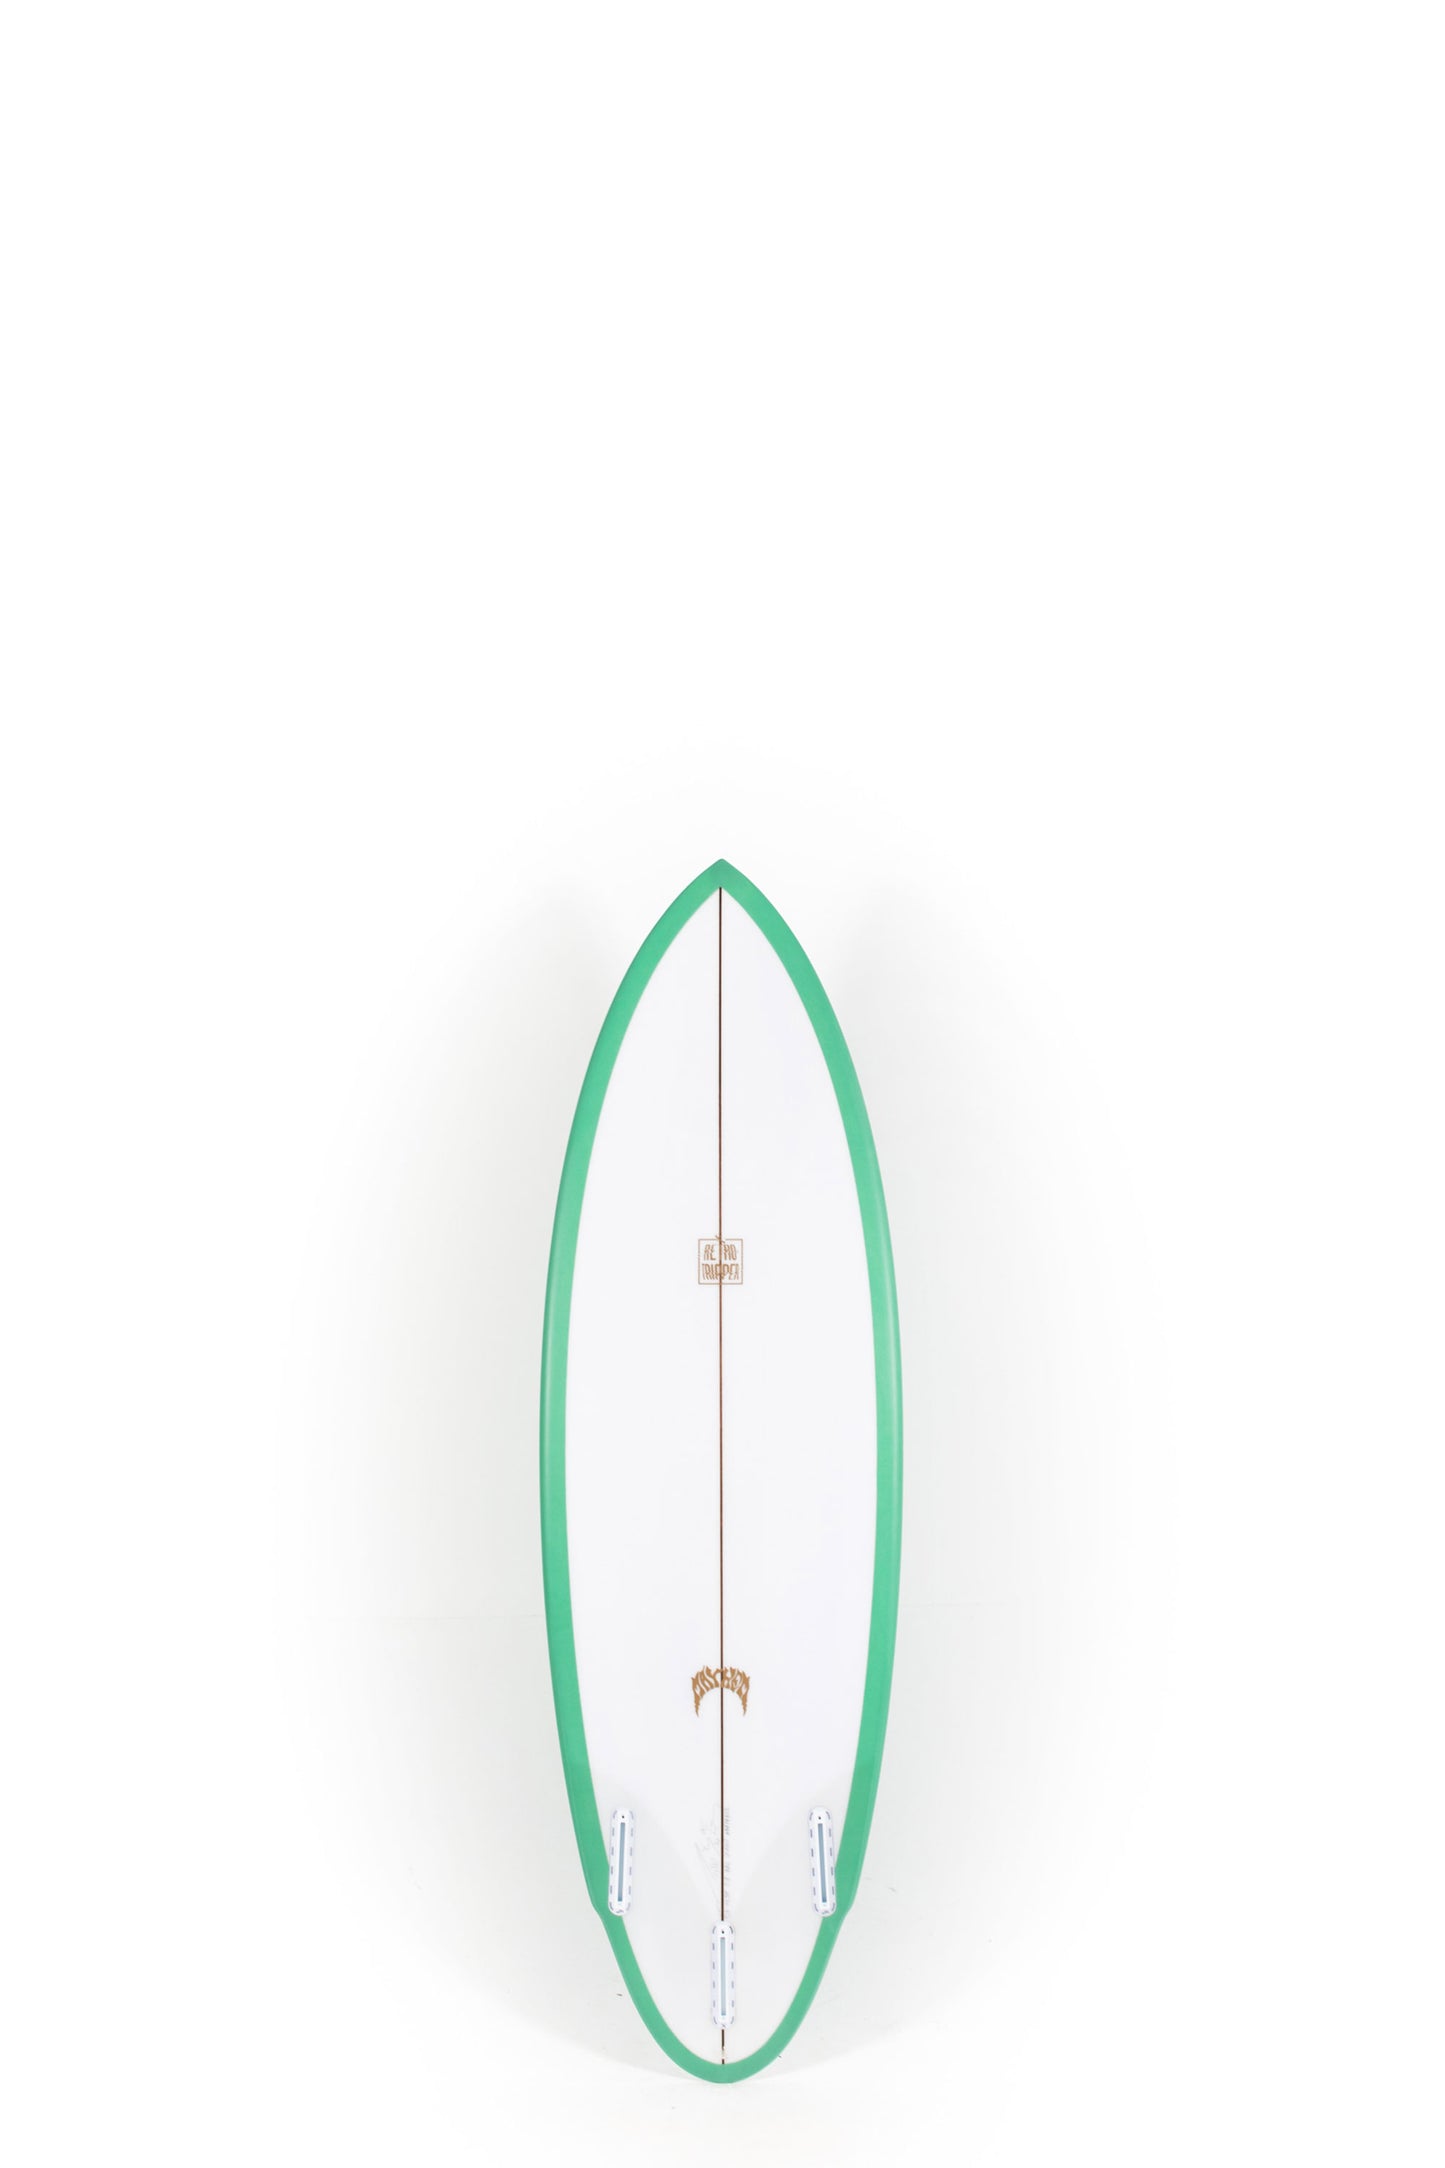 Pukas Surf Shop - Lost Surfboard - RETRO TRIPPER by Matt Biolos - 5'7" x 19.75 x 2.40 x 30L - MH14302